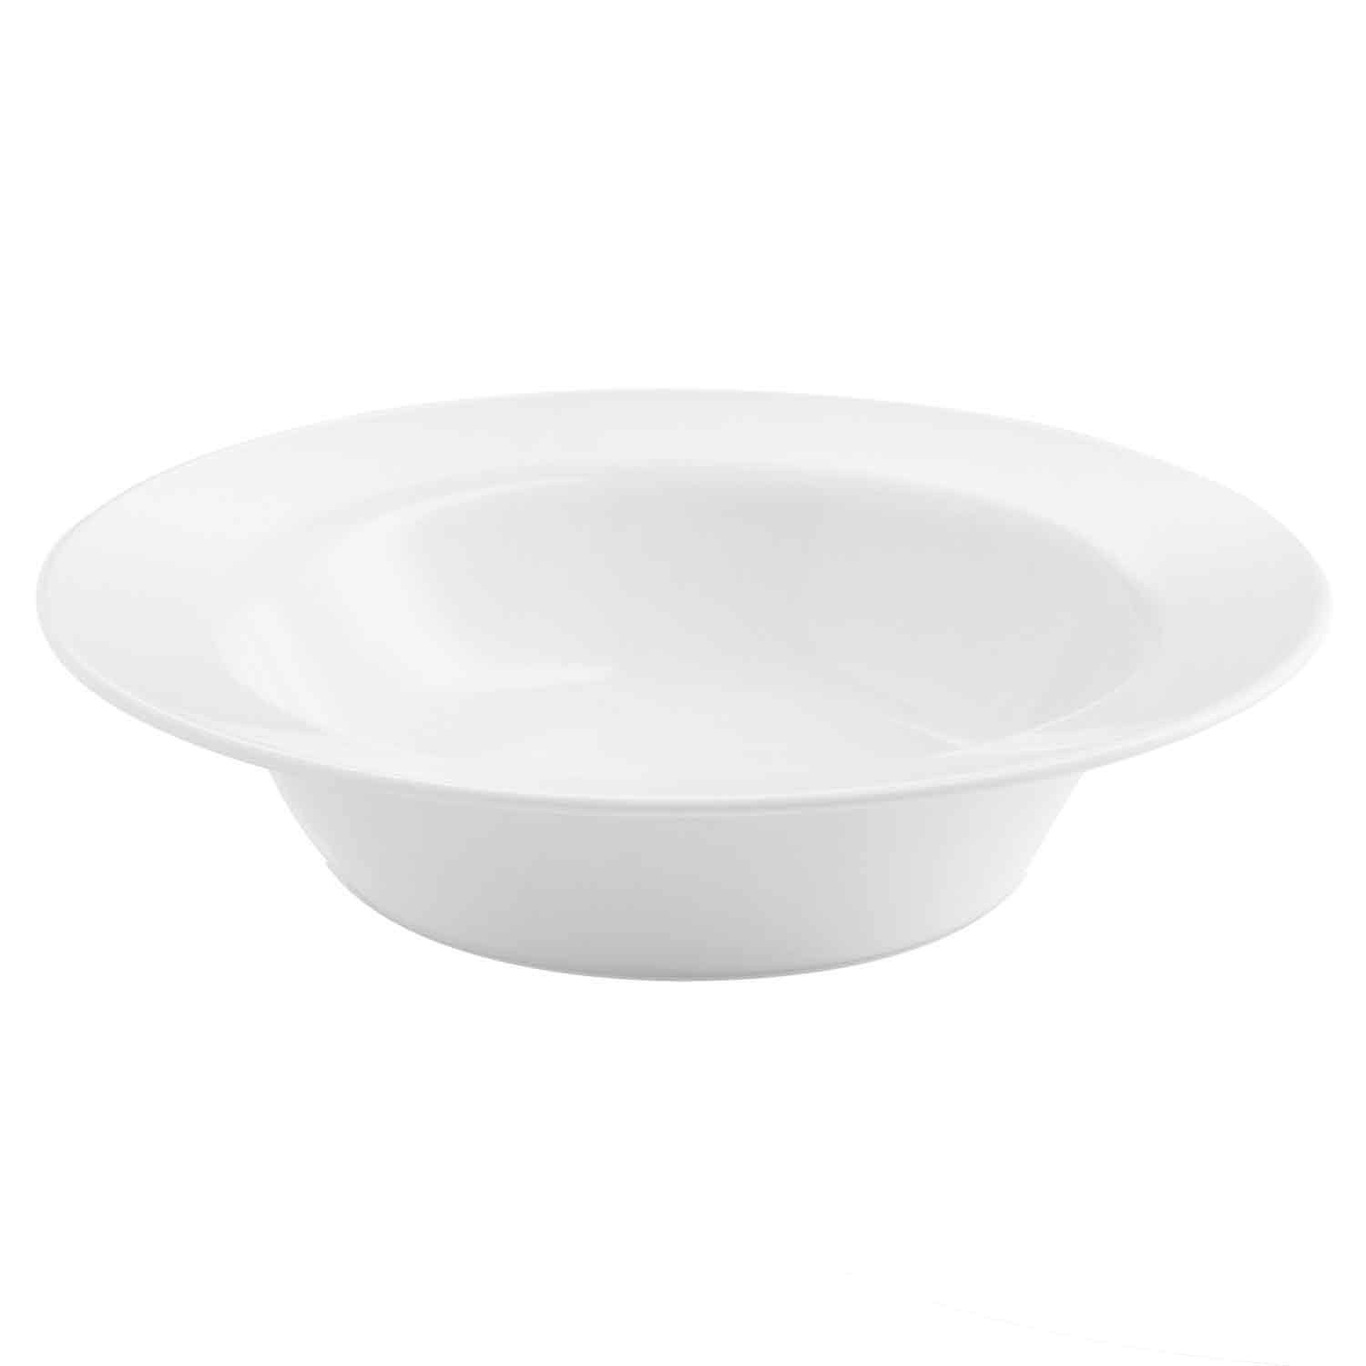 Enso Soup Plate 22 cm, White